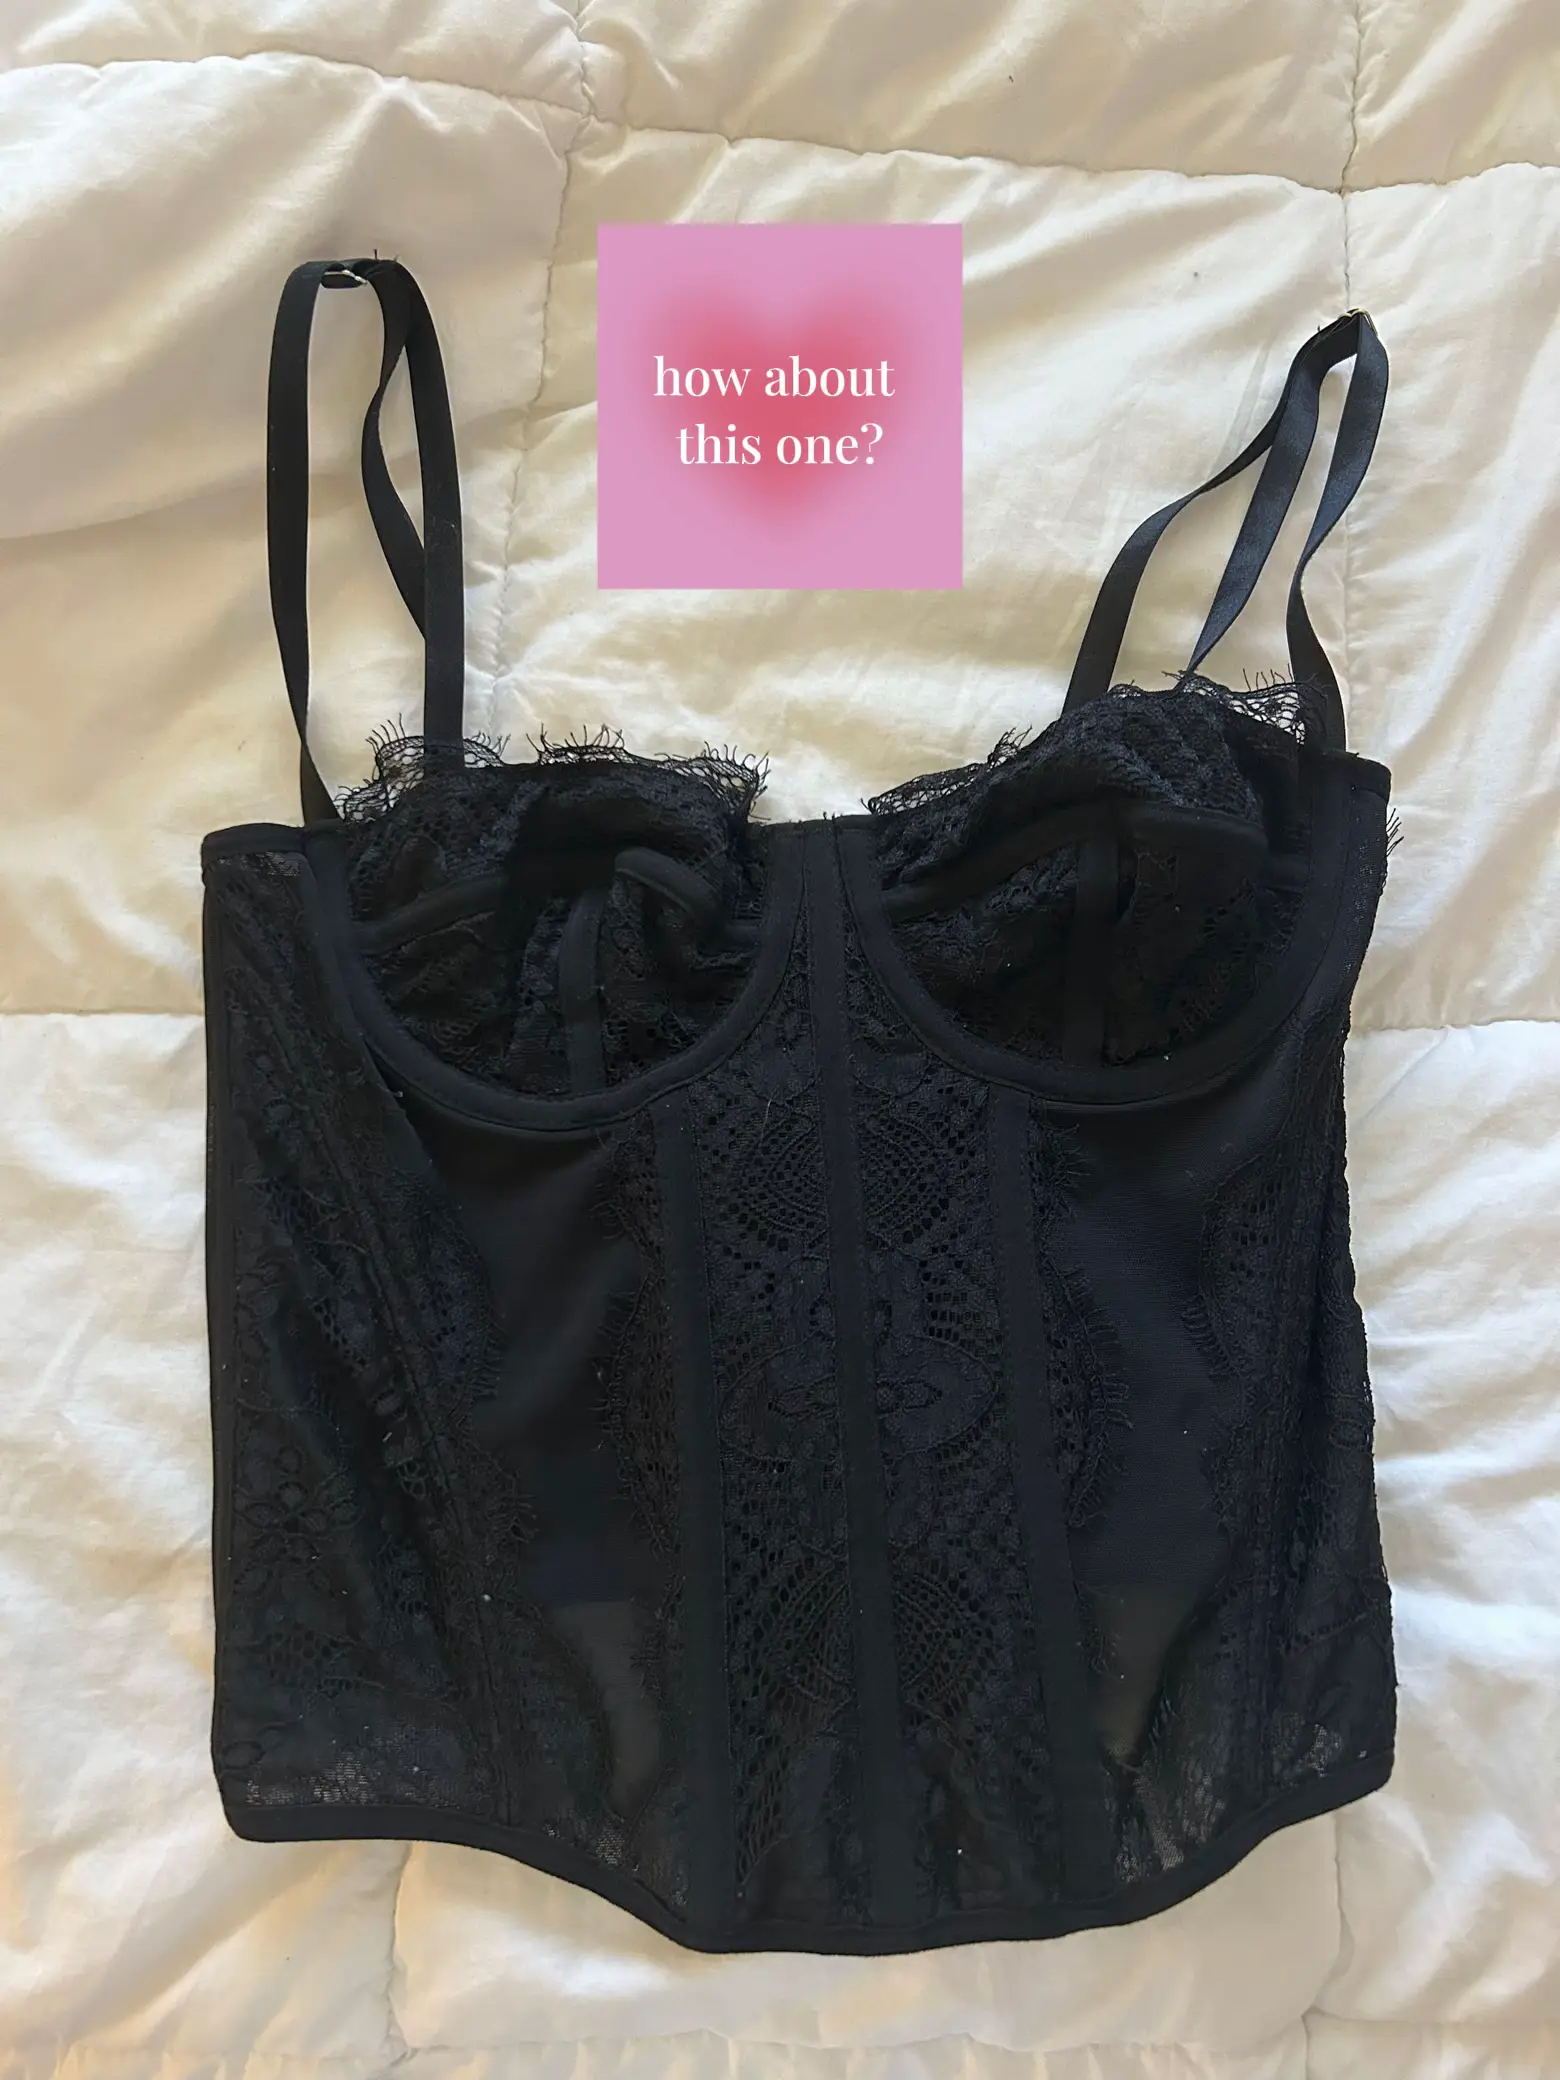 Nanier Women's Thin Transparent Lace Bra Set Black 32A : :  Clothing, Shoes & Accessories